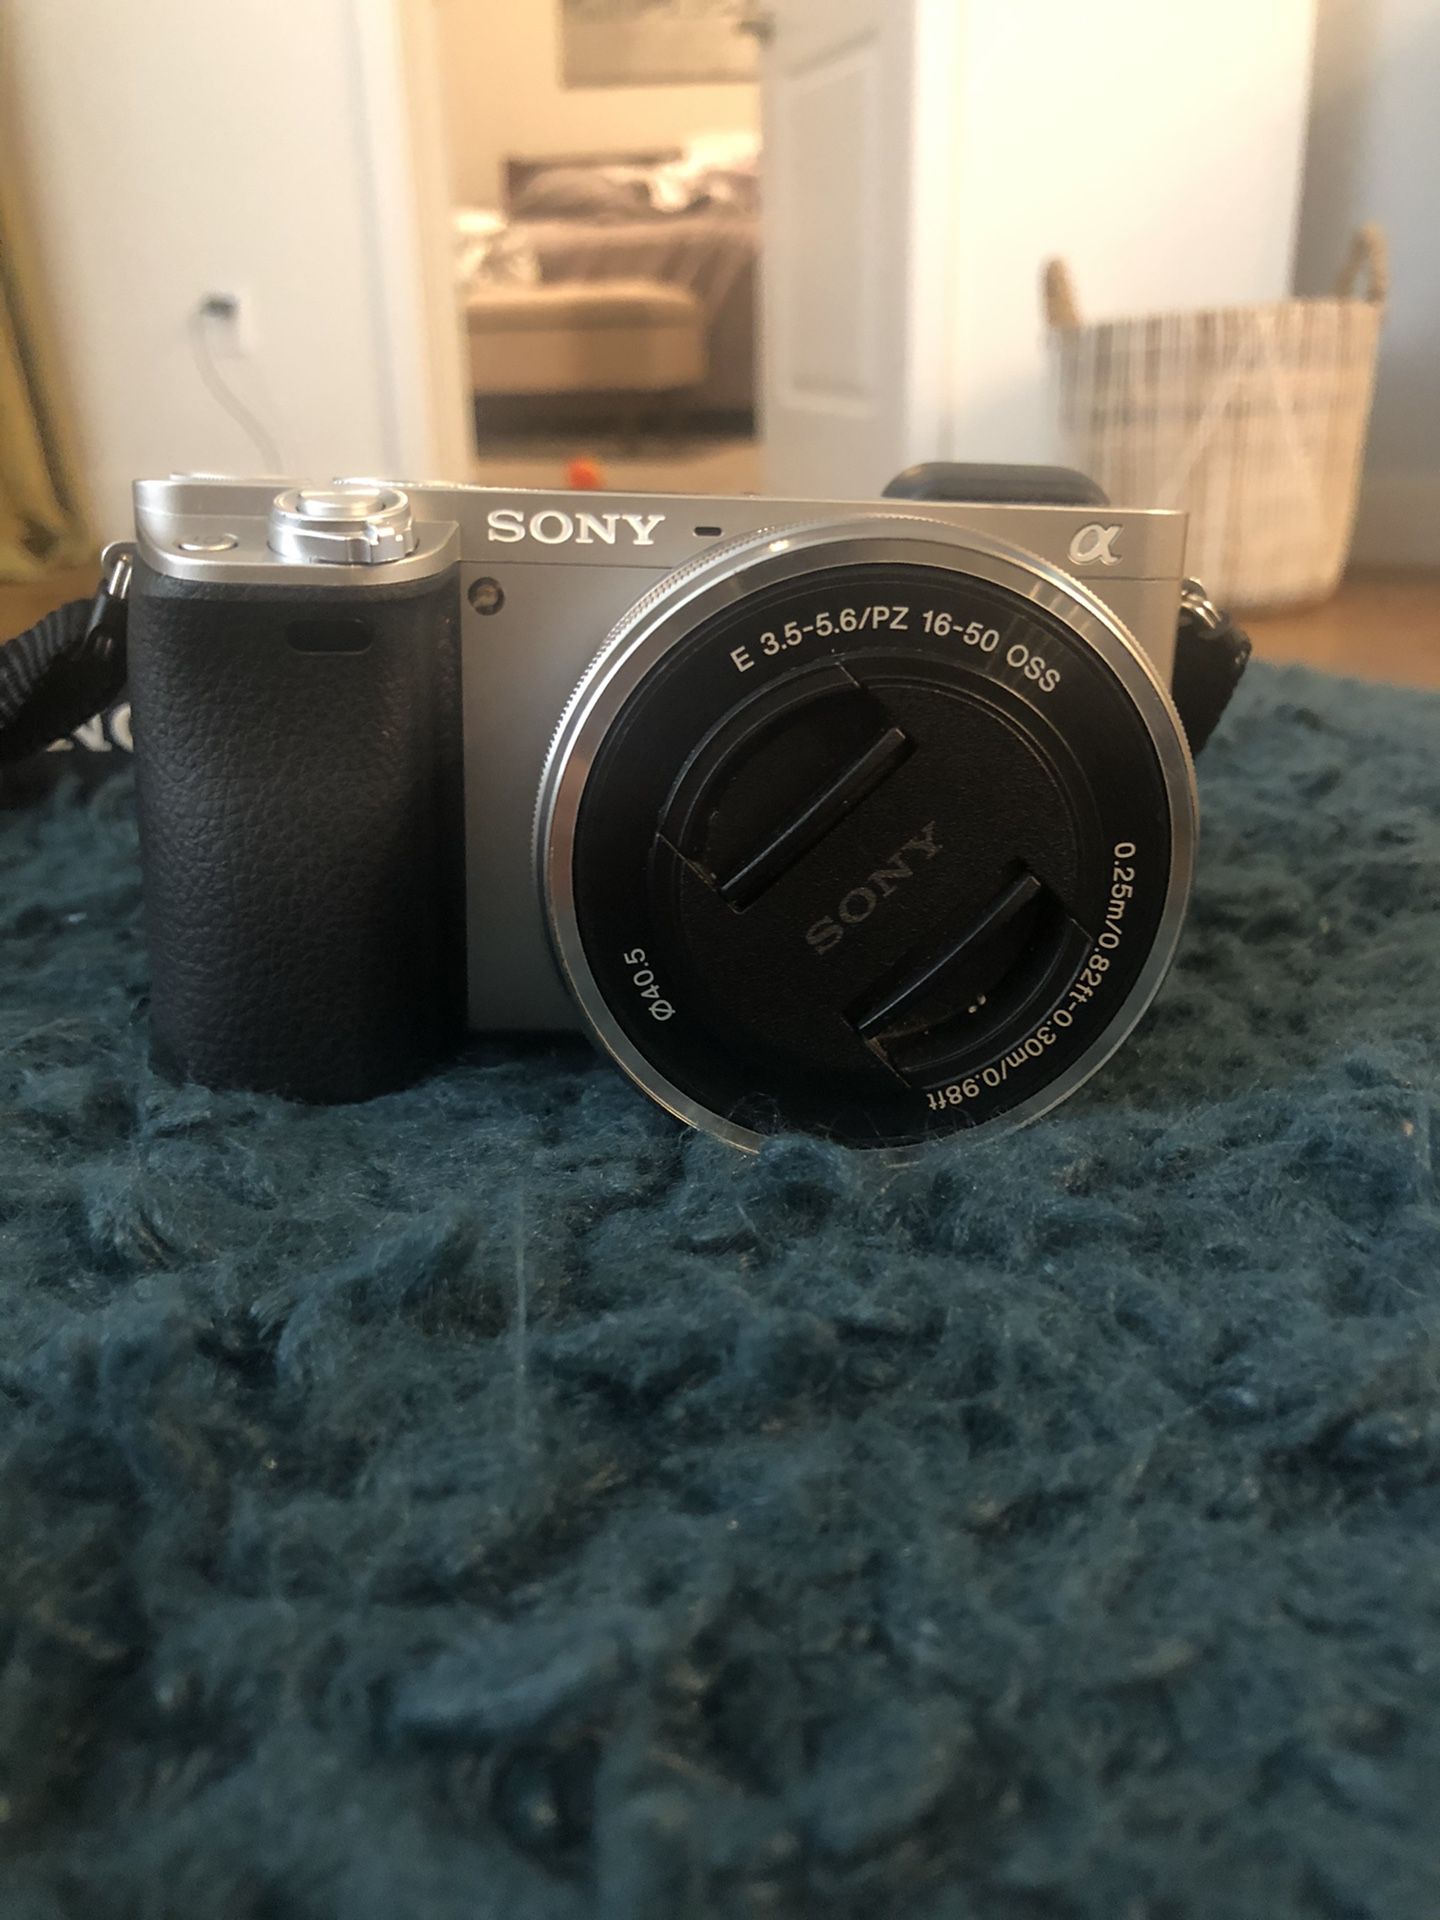 Sony a6000 camera